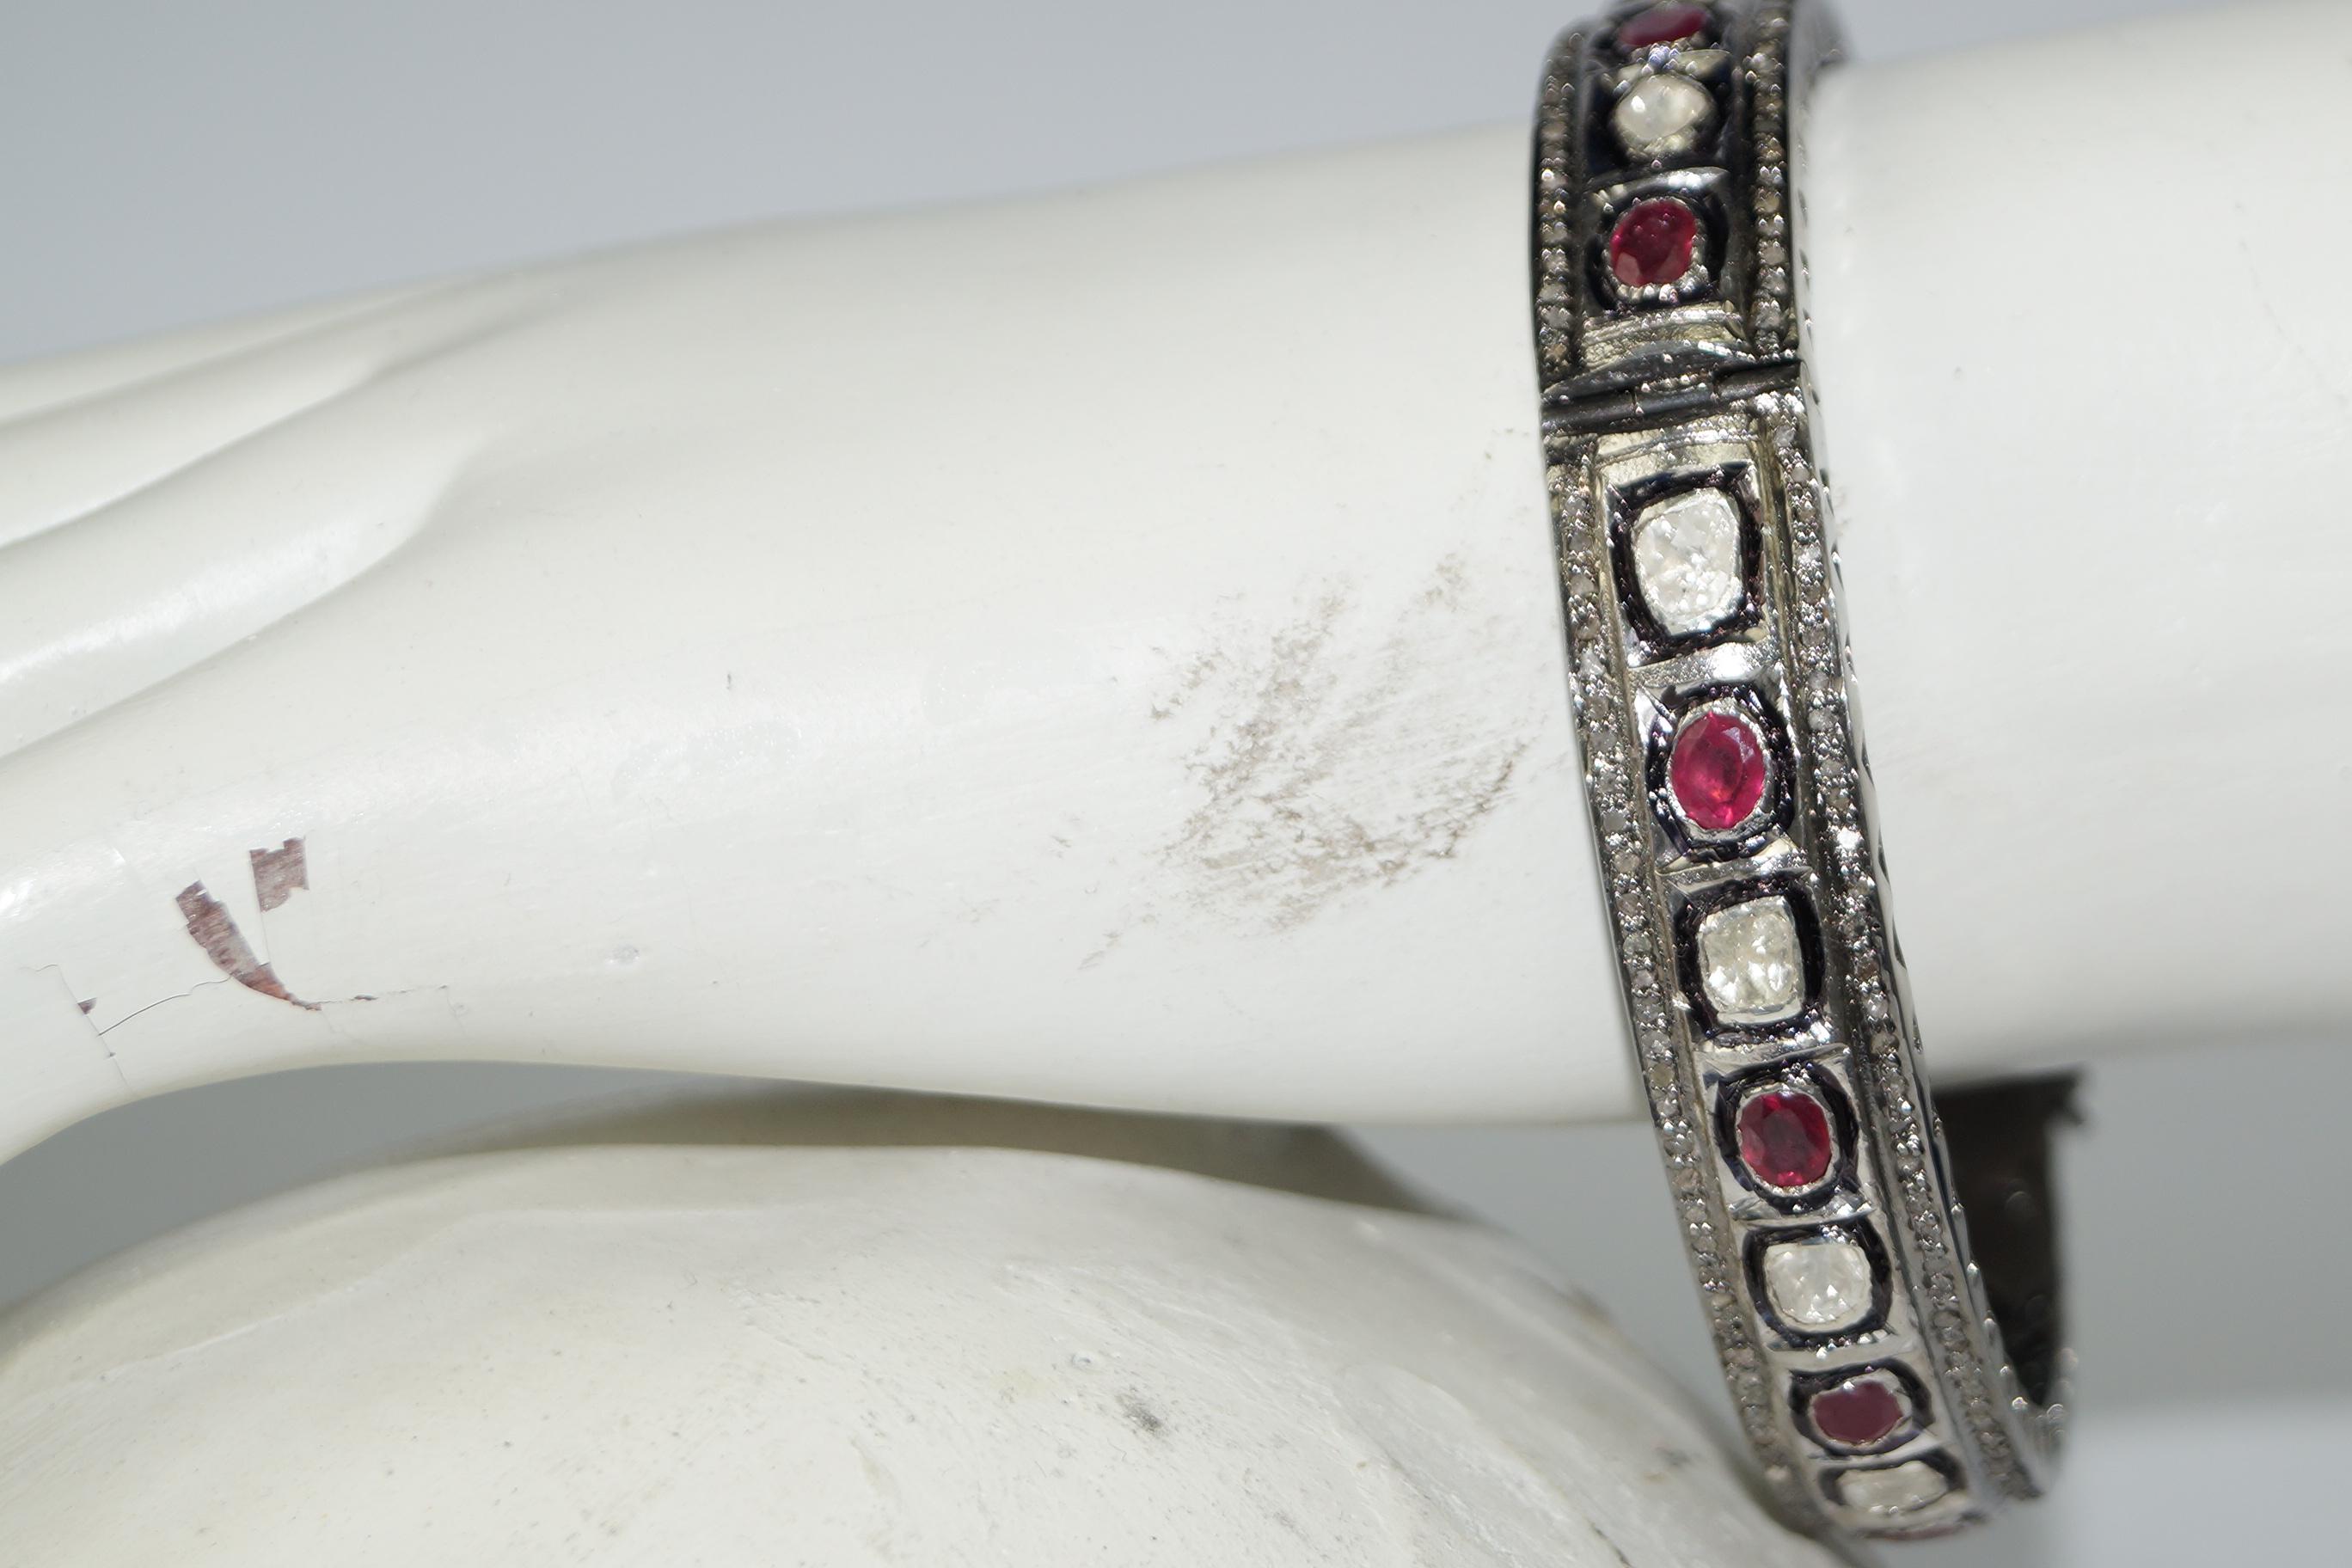 Diese schöne Retro-Stil Diamant oxidiert Silber Rubin Armband besteht aus:

Diamant - Rosenschliff und ungeschliffener Diamant
Herkunft des Diamanten - natürlich
Gewicht der Diamanten - 3,88cts

Metall- Silber
Metallreinheit - 925 (Sterling